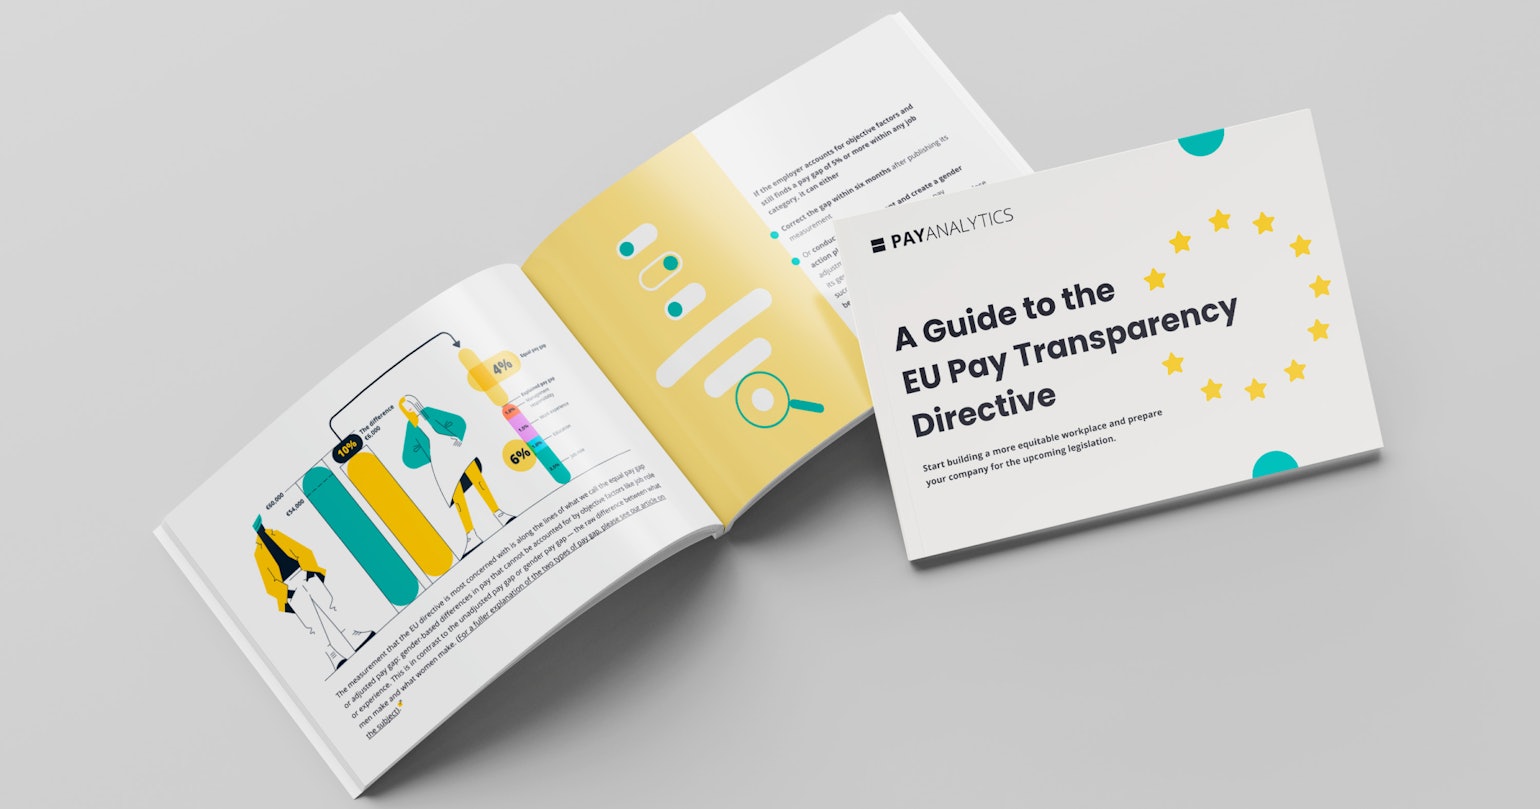 Guía para la directiva sobre transparencia salarial de la UE